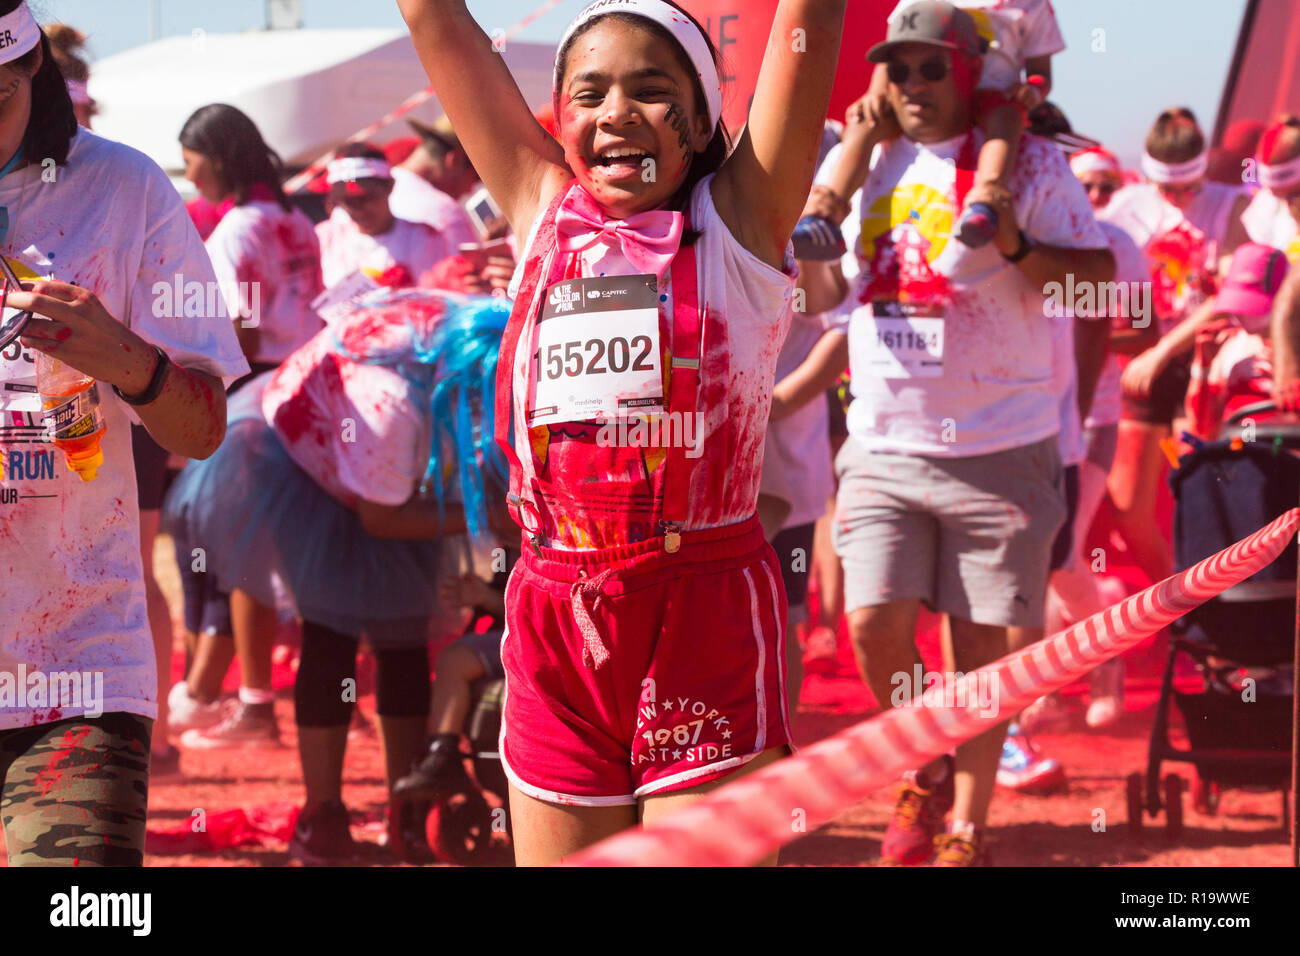 Kleines Mädchen von gemischten Rennen oder farbige Ethnie ca. 8-10 Jahre alt springen auf und ab, die Arme in der Luft in roter Farbe pulverbeschichtet, während ein Sommer Colour run Veranstaltung angehoben Stockfoto